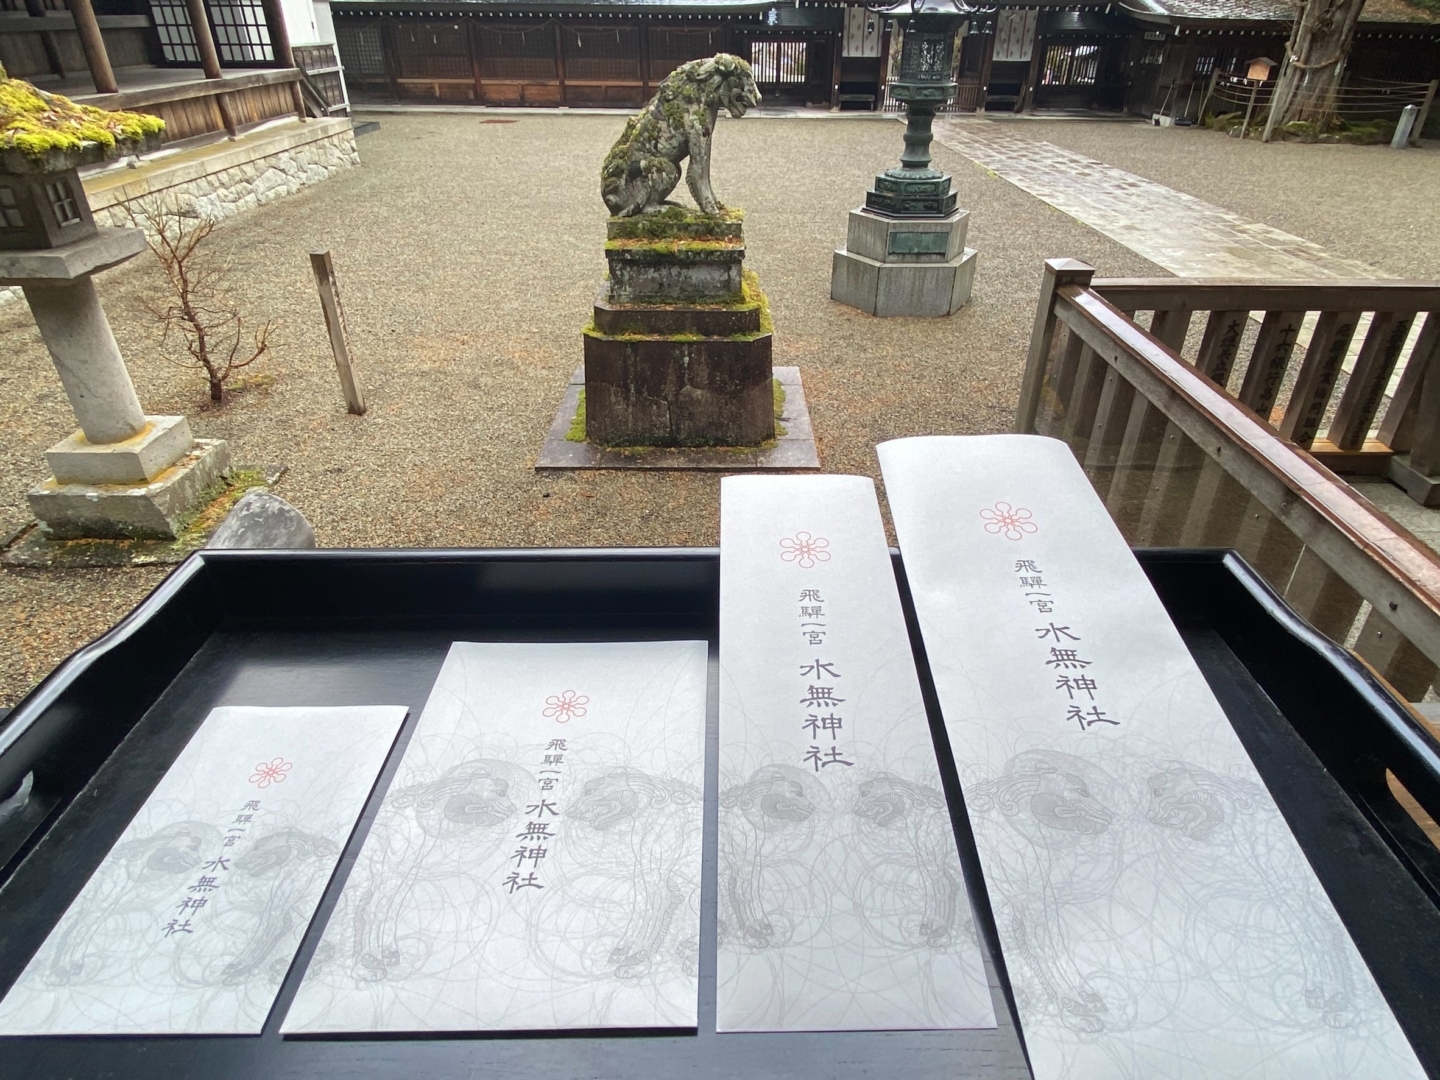 ［Kyogen］Entre les mains des visiteurs, offrant des designs sacrés : Sacs-cadeaux du sanctuaire Minashi à Ichinomiya, dans la région de Hida.